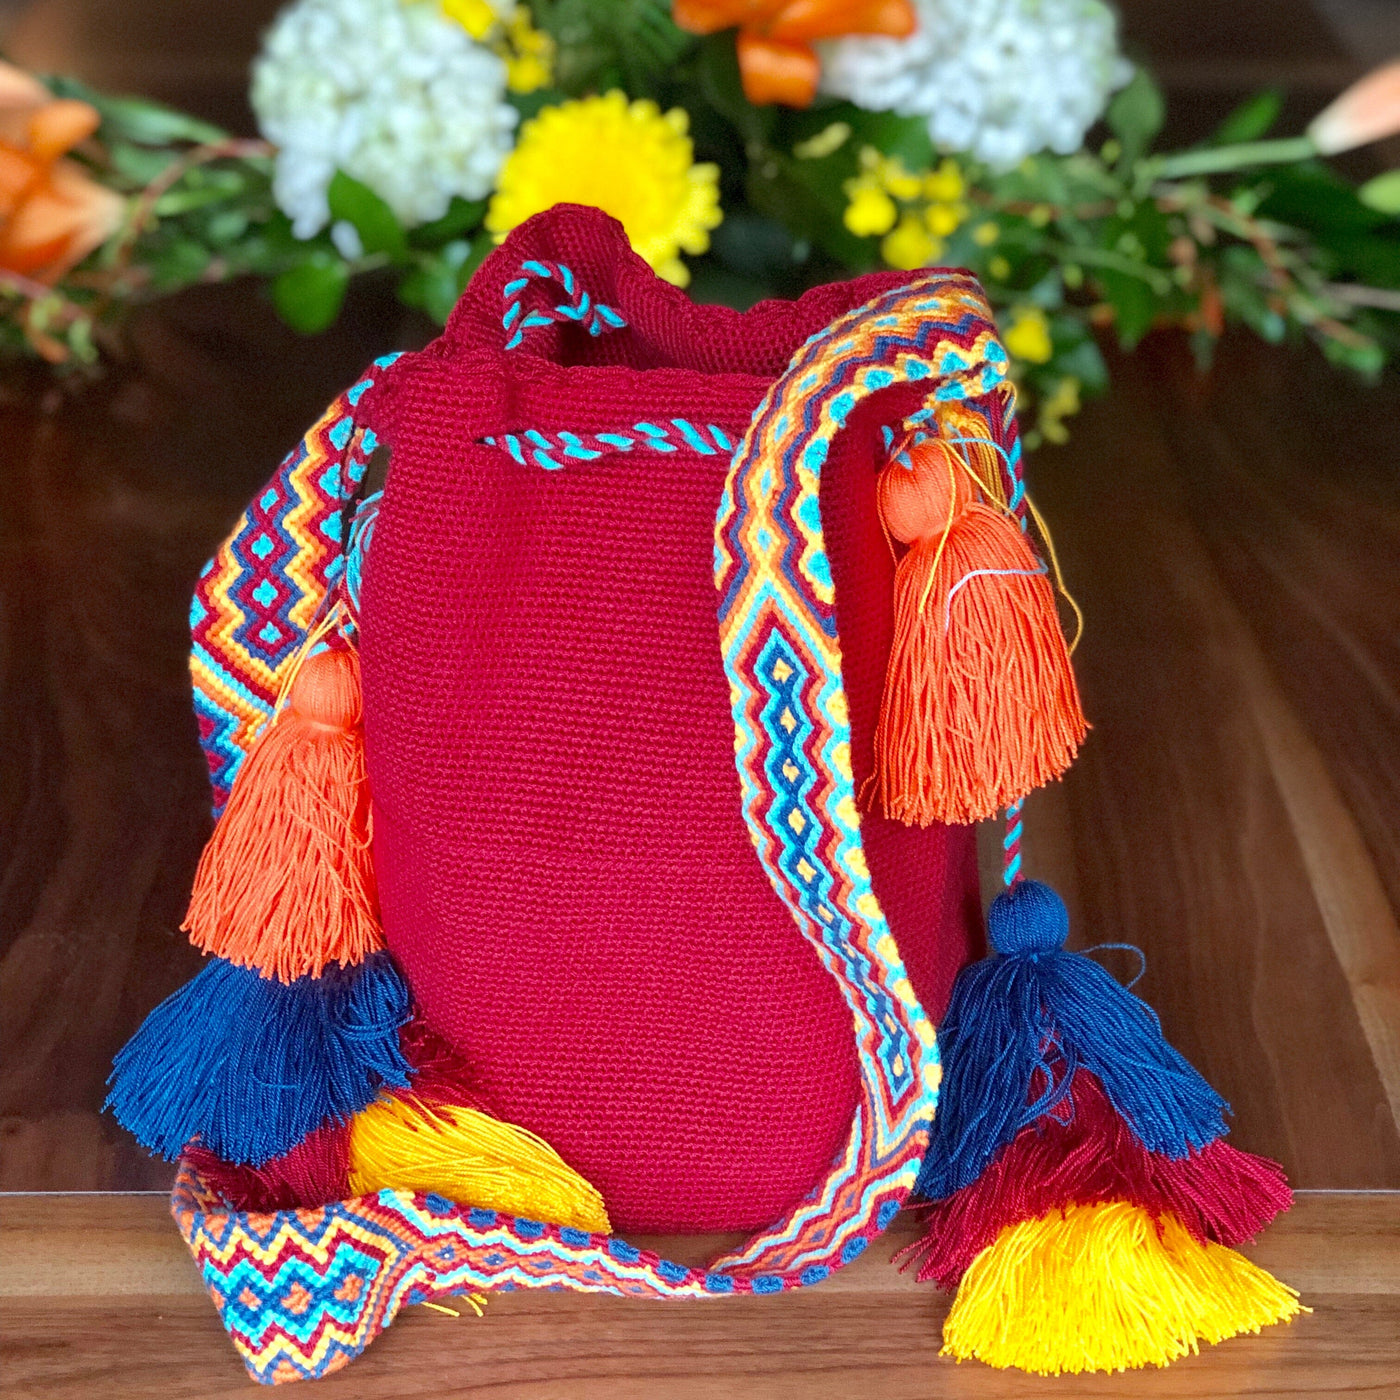 Colorful Crochet Tassel Bags - Desert Sunset Crochet Boho Bag with Tassels - Crossbody Bucket Bag Dark Red MWUB15